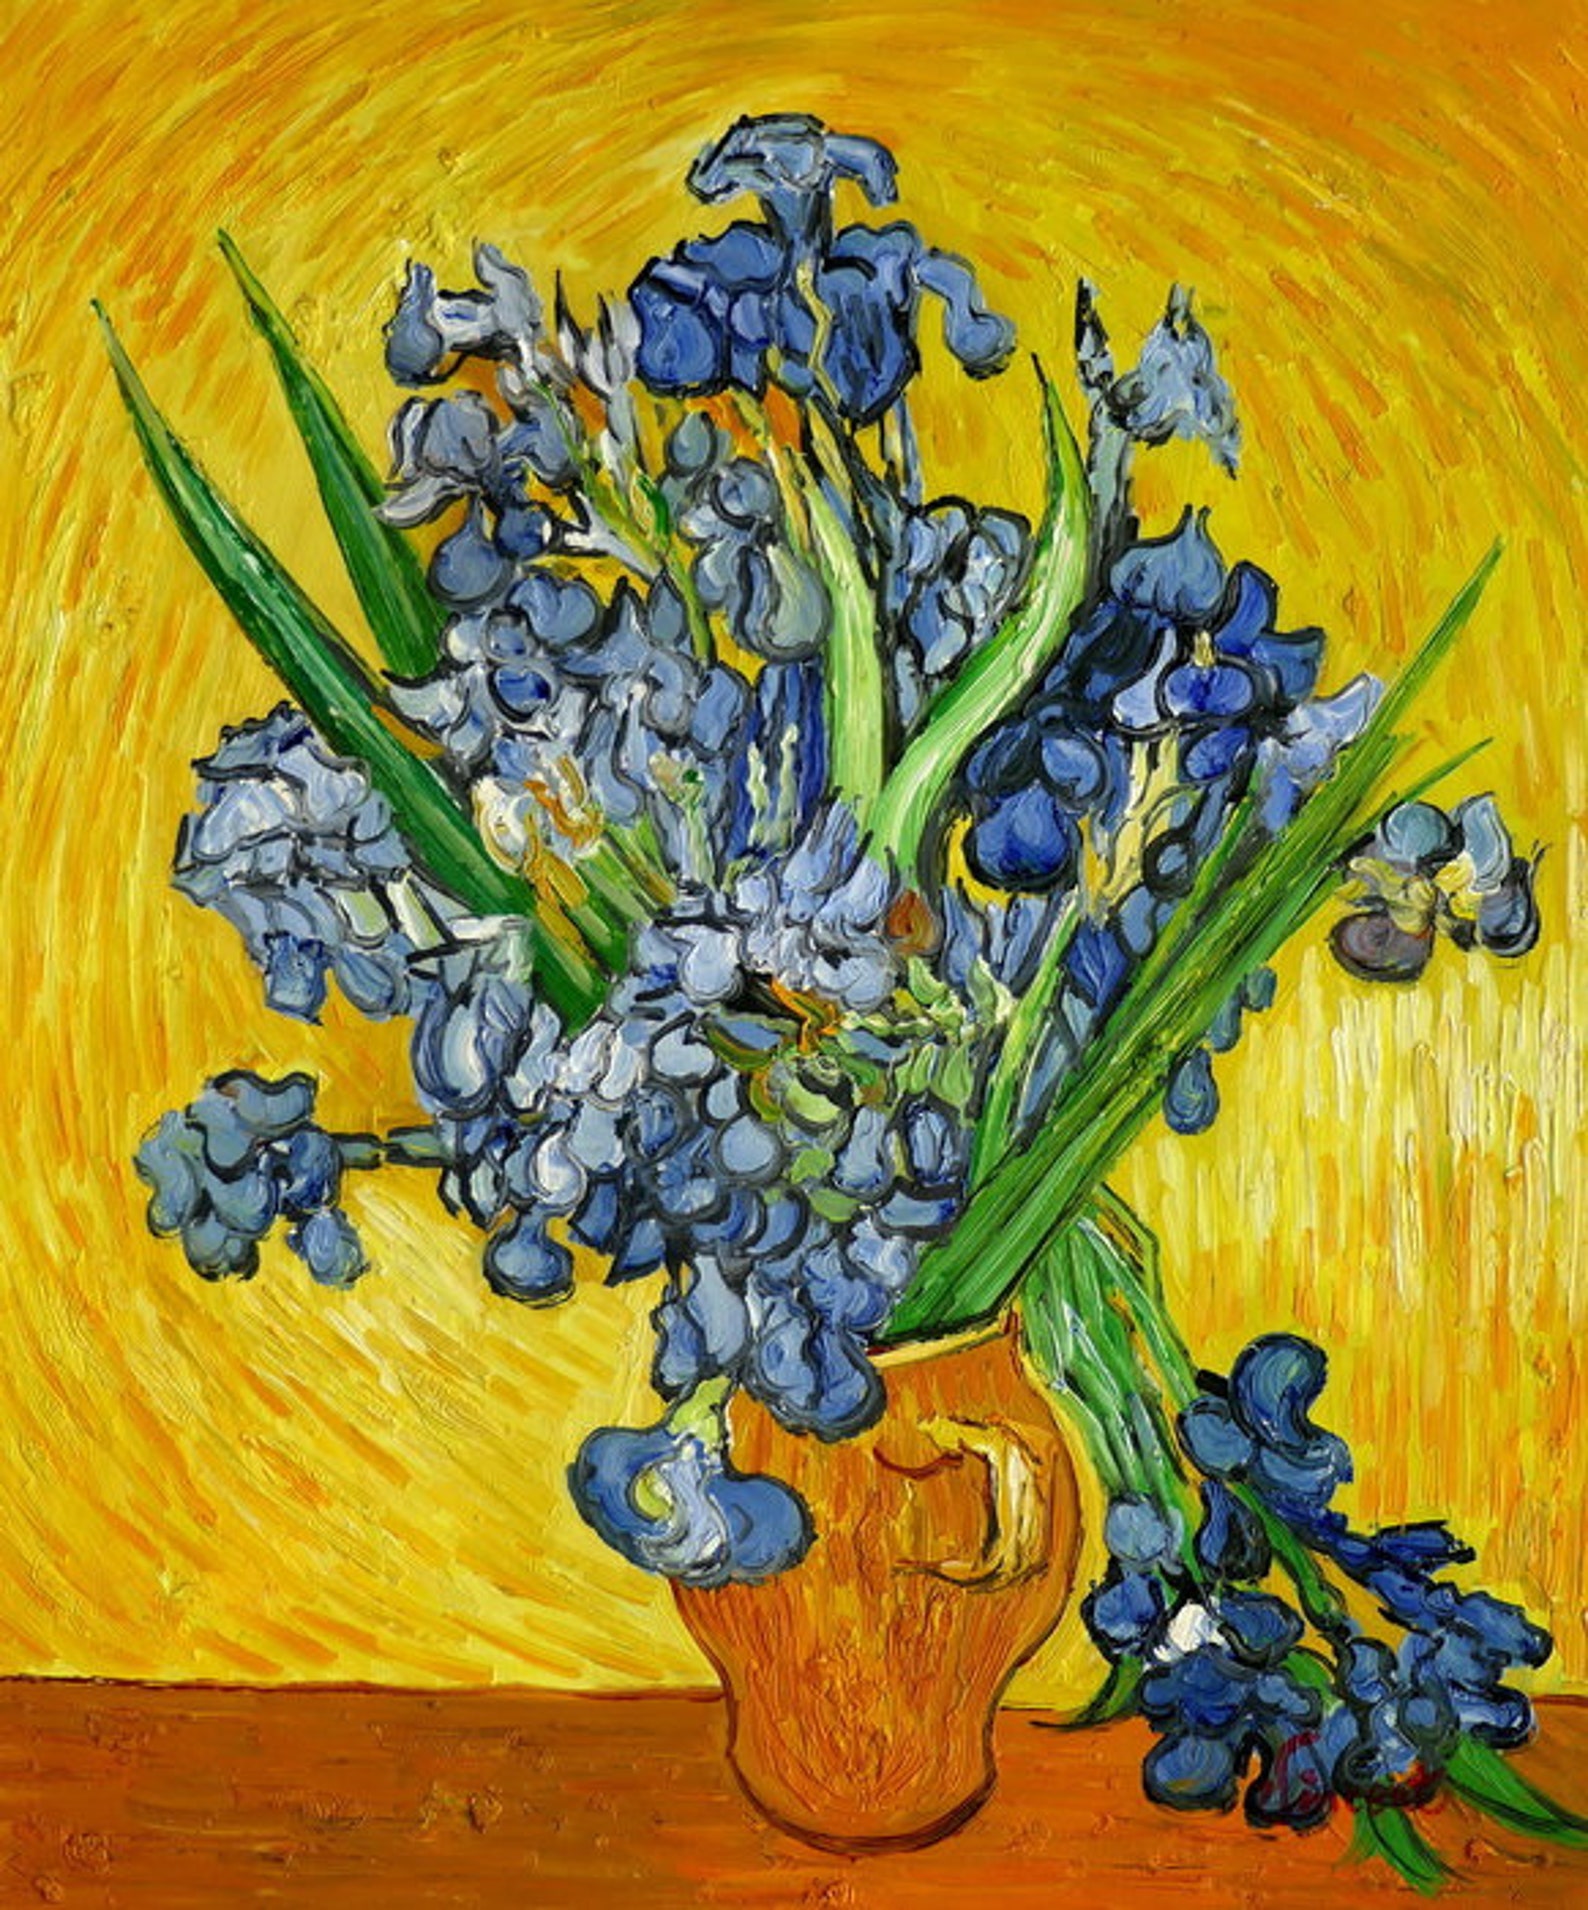 Abstrakte Malerei Blumen nach Van Gogh Öl auf Leinwand / | Etsy